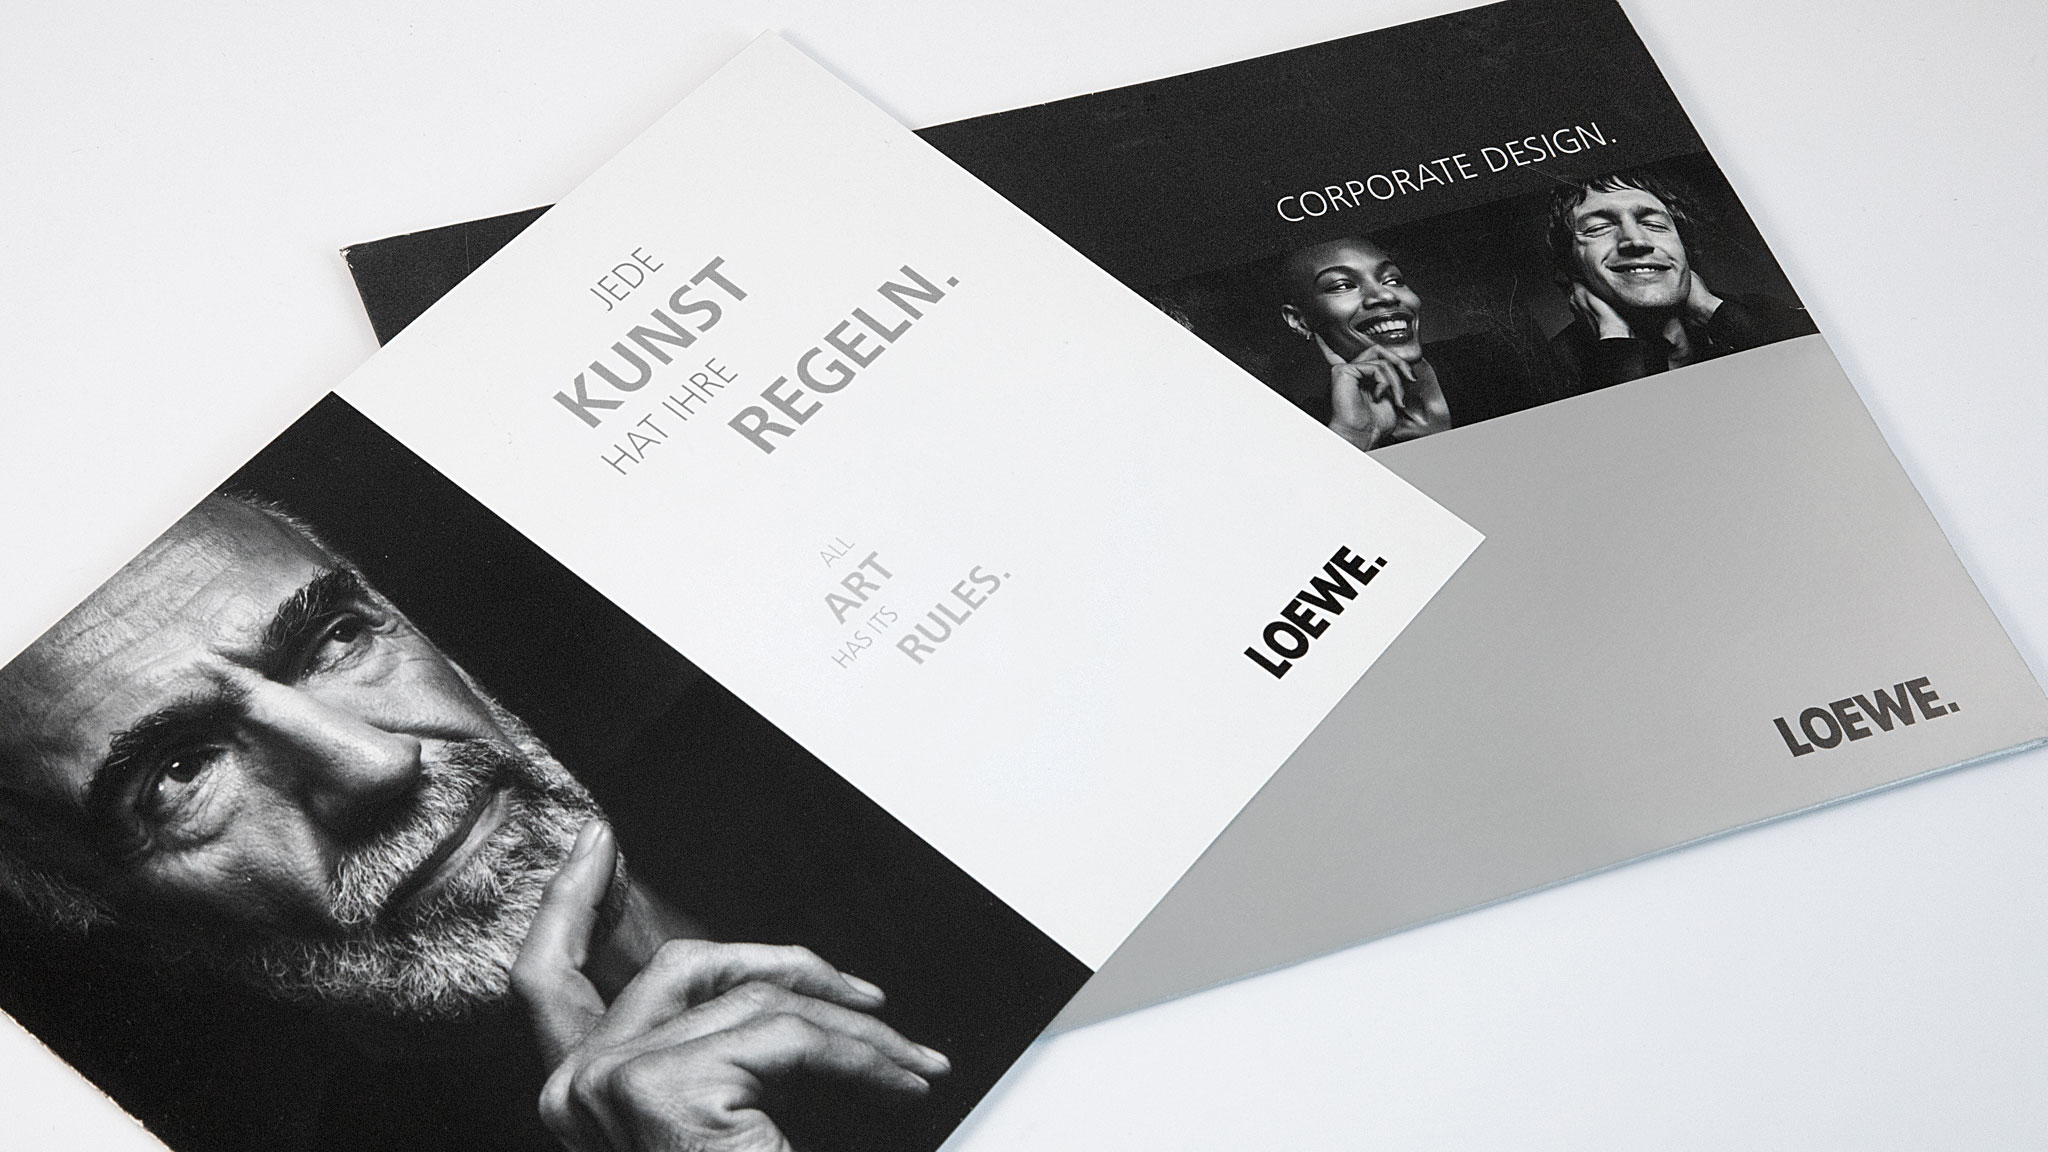 19_Loewe-Corporate-Design-Manual-1korr2